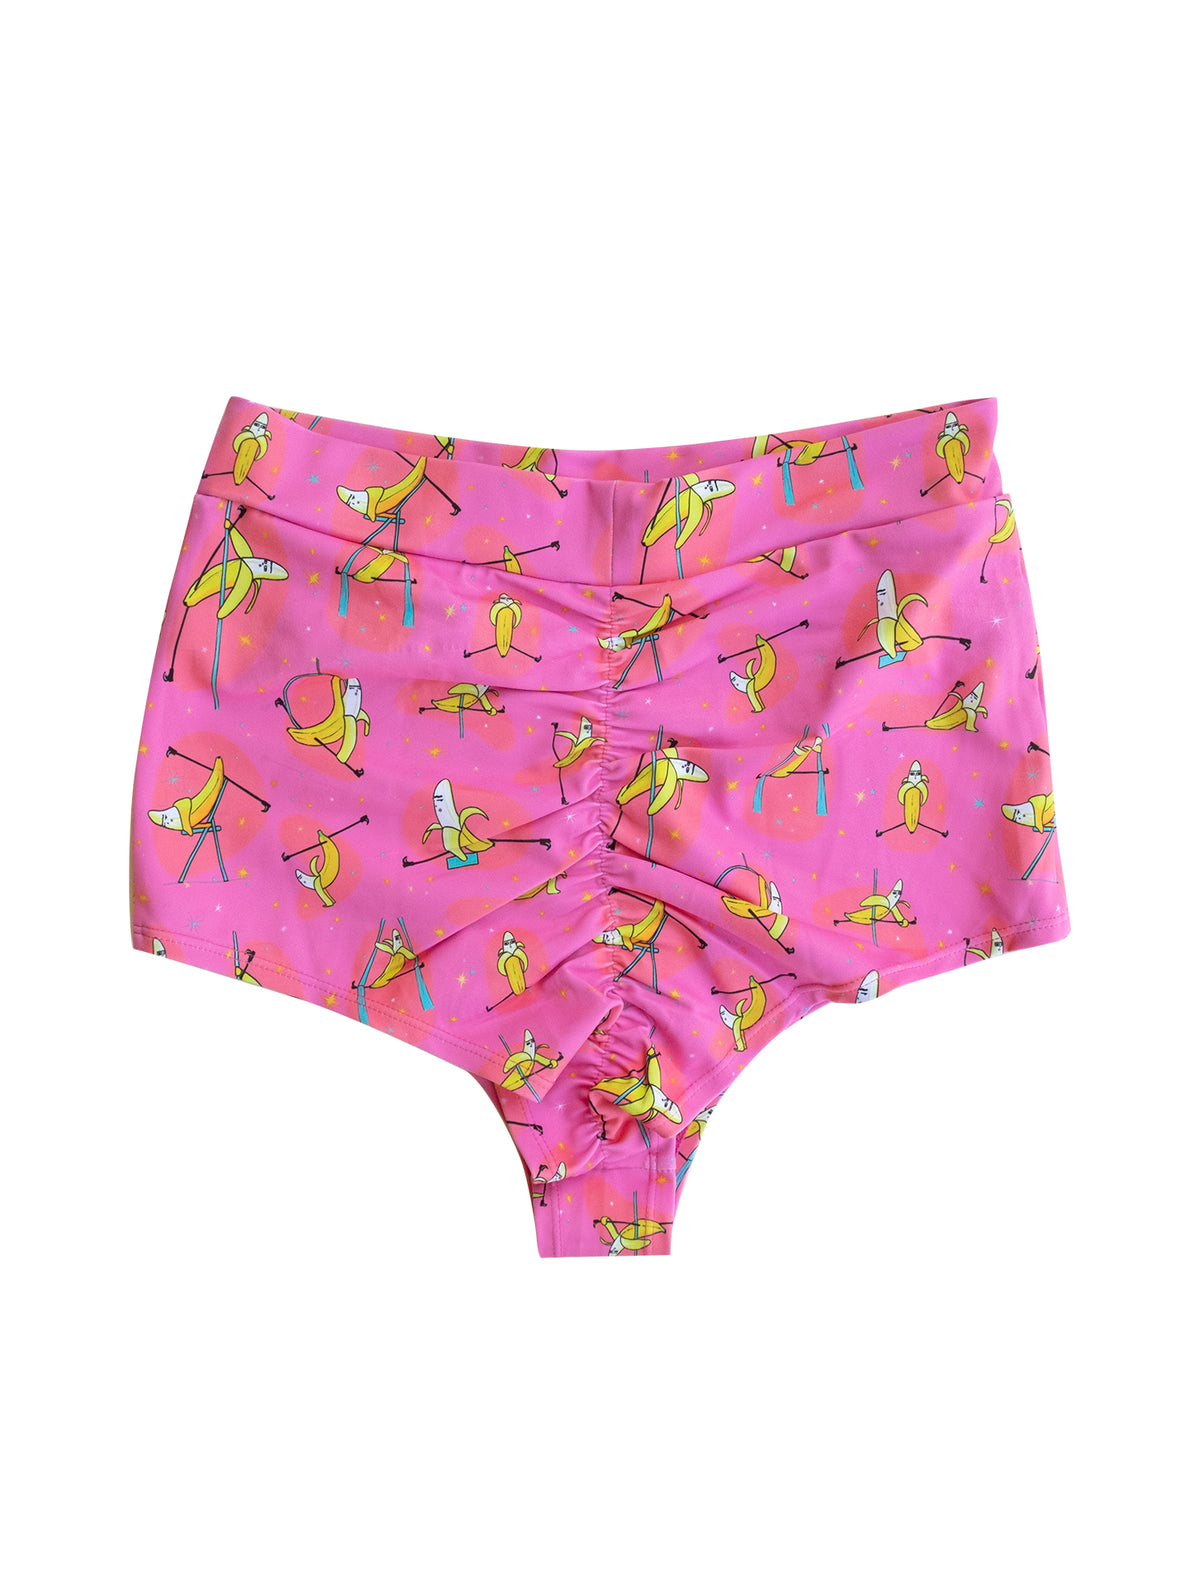 Banana Splits Pink High Waist Cheeky Shorts